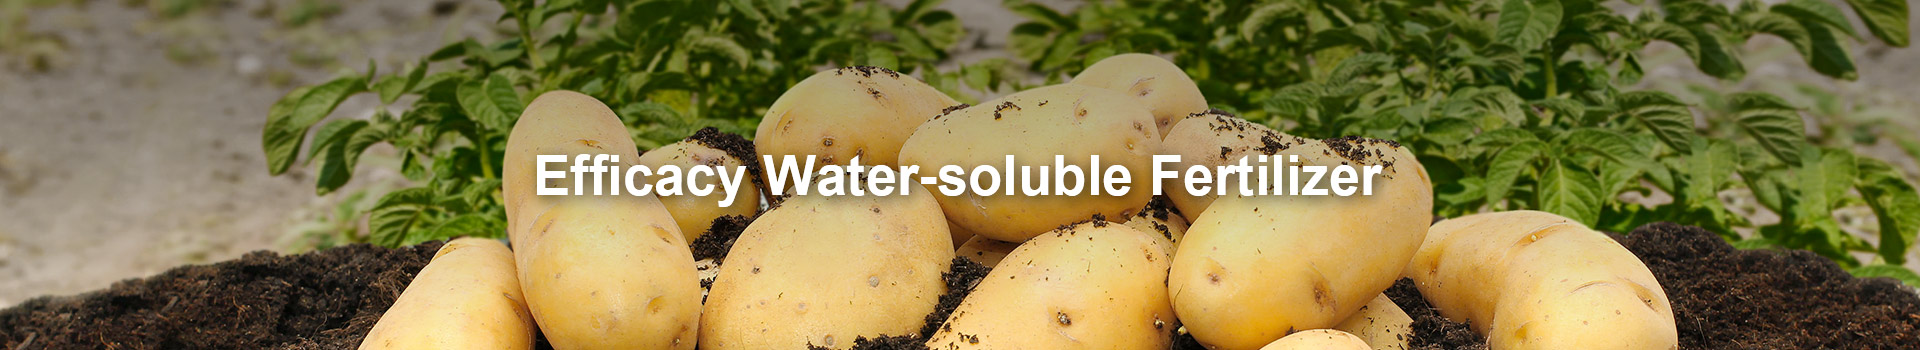 Efficacy Water-soluble Fertilizer